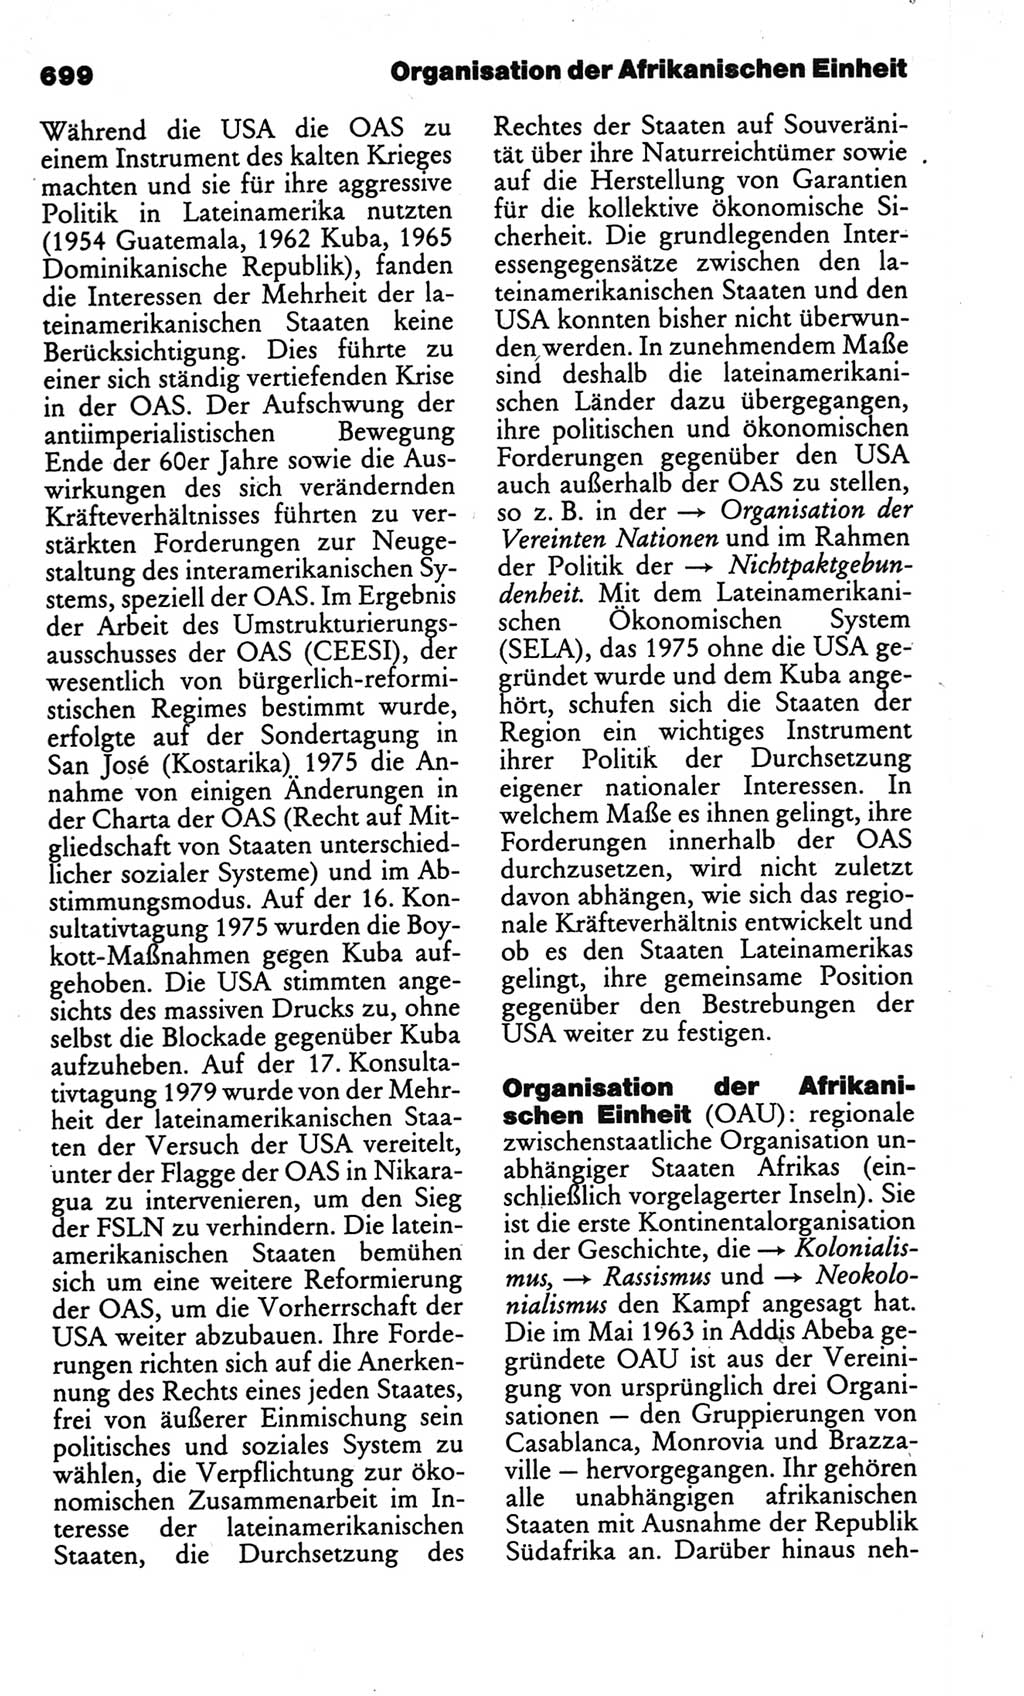 Kleines politisches Wörterbuch [Deutsche Demokratische Republik (DDR)] 1986, Seite 699 (Kl. pol. Wb. DDR 1986, S. 699)